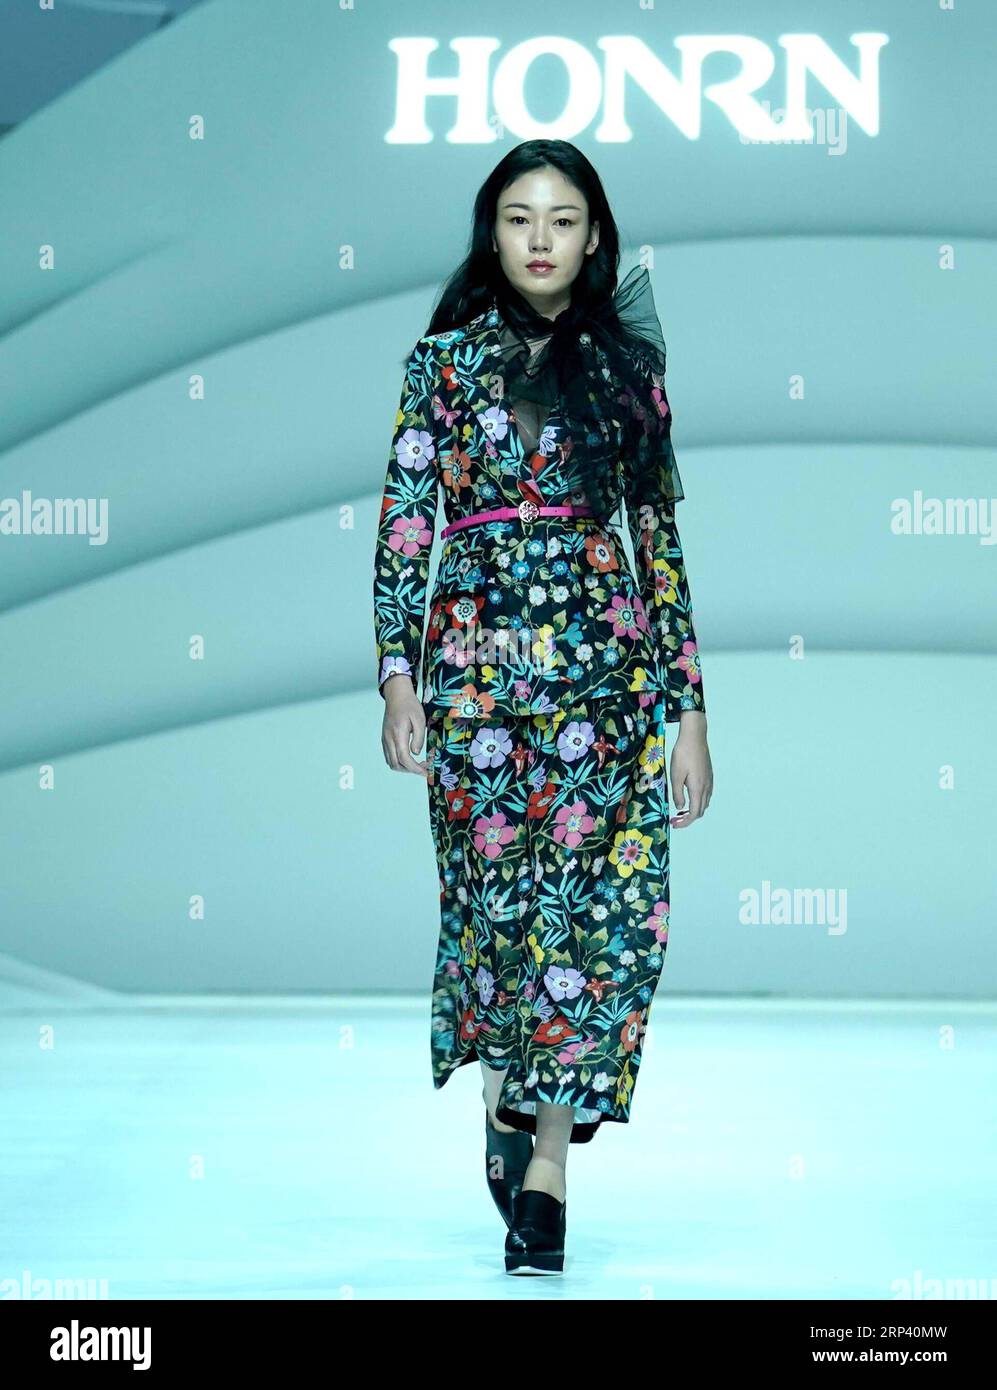 (181021) -- WUHAN, 21 octobre 2018 (Xinhua) -- Un modèle présente une création de la marque chinoise Honrn lors du salon d'ouverture de la semaine de la mode de Wuhan 2018 à Wuhan, dans la province du Hubei en Chine centrale, le 20 octobre 2018. L'événement de cinq jours a débuté samedi dans une zone de mode nommée Red T à Wuhan. (Xinhua/Chen Jianli)(gxn) CHINA-HUBEI-WUHAN-FASHION WEEK (CN) PUBLICATIONxNOTxINxCHN Banque D'Images